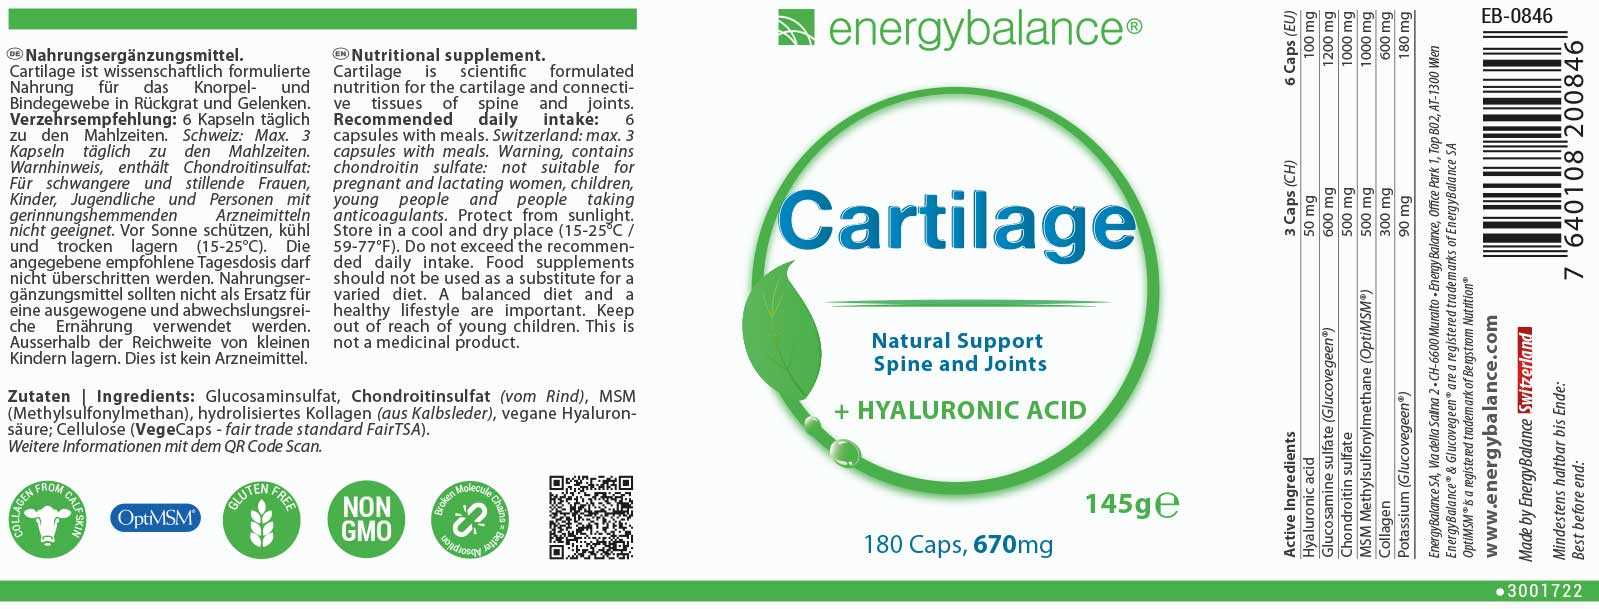 Cartilage Etikett von Energybalance